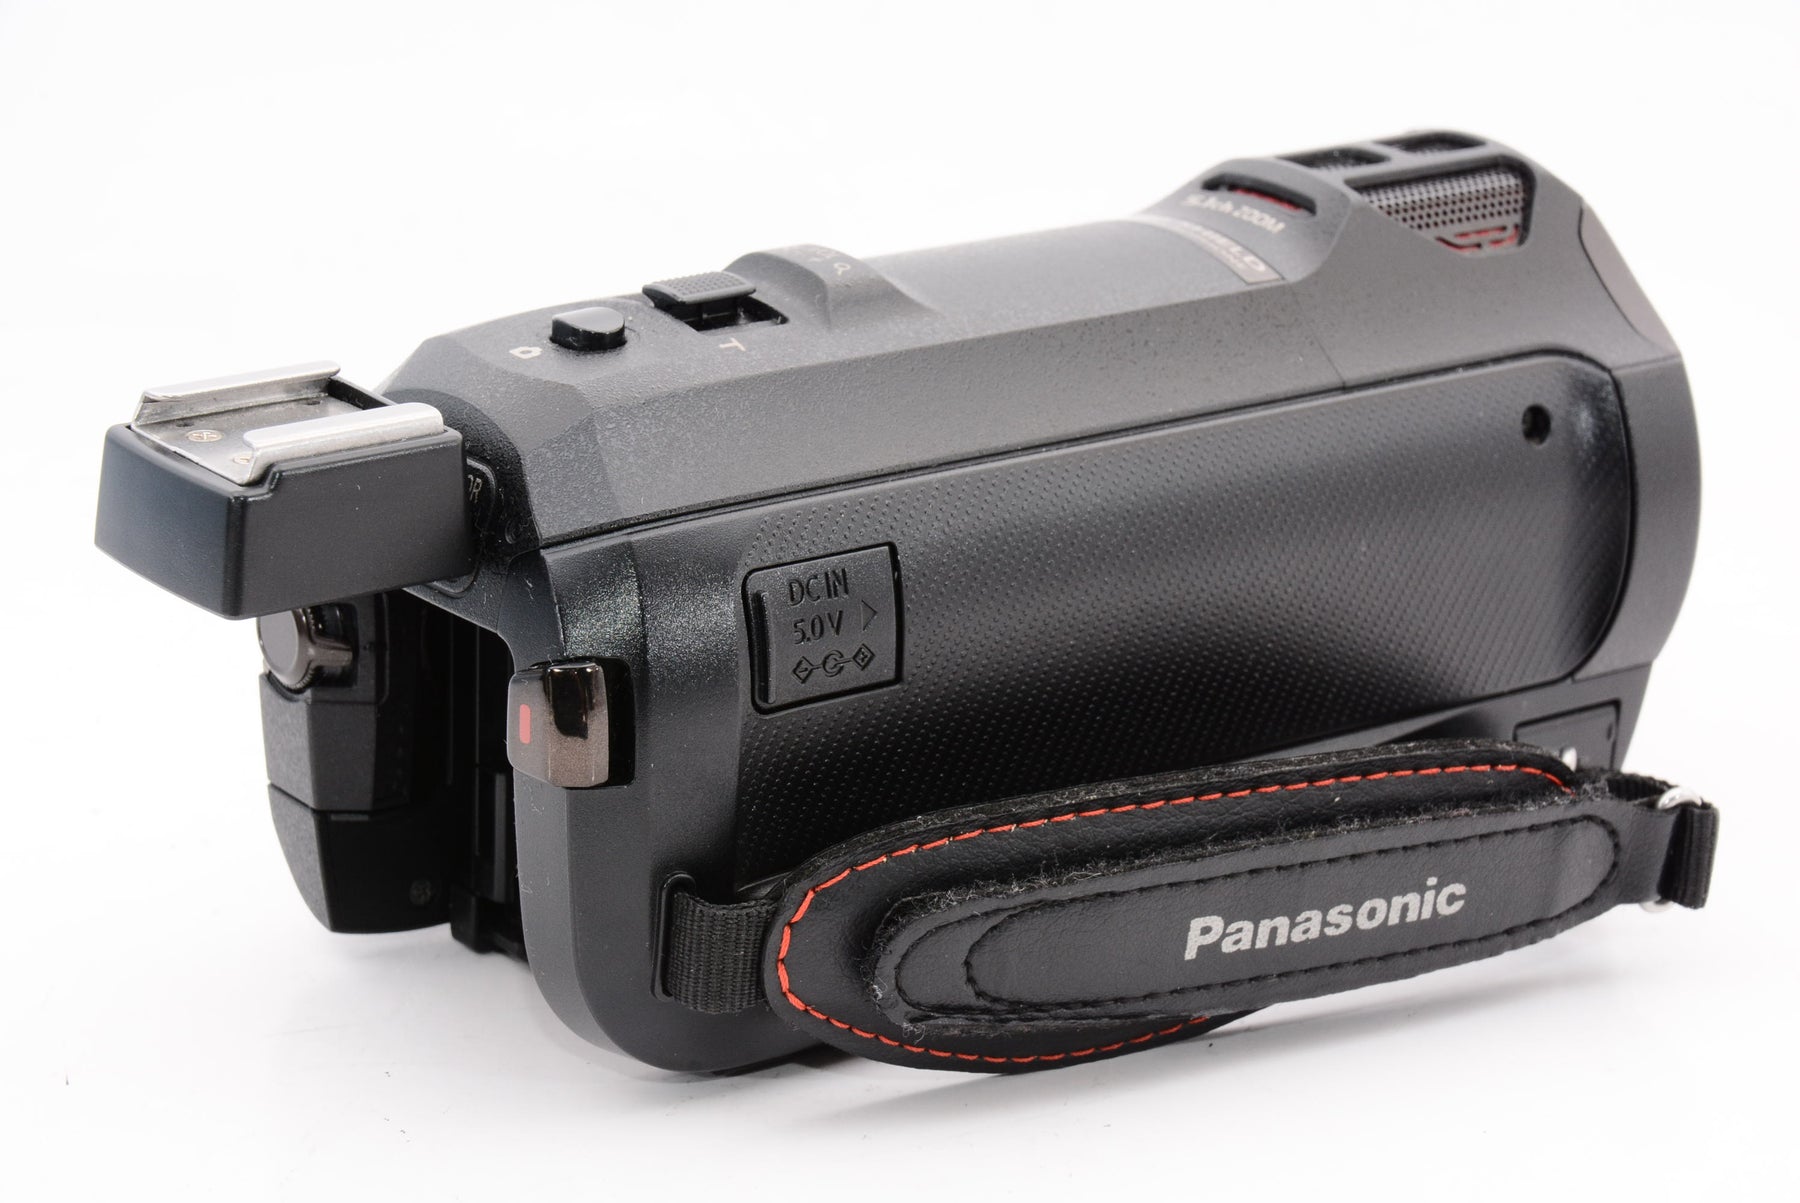 外観特上級】パナソニック デジタル4Kビデオカメラ WX990M 64GB ワイプ撮り あとから補正 ブラック